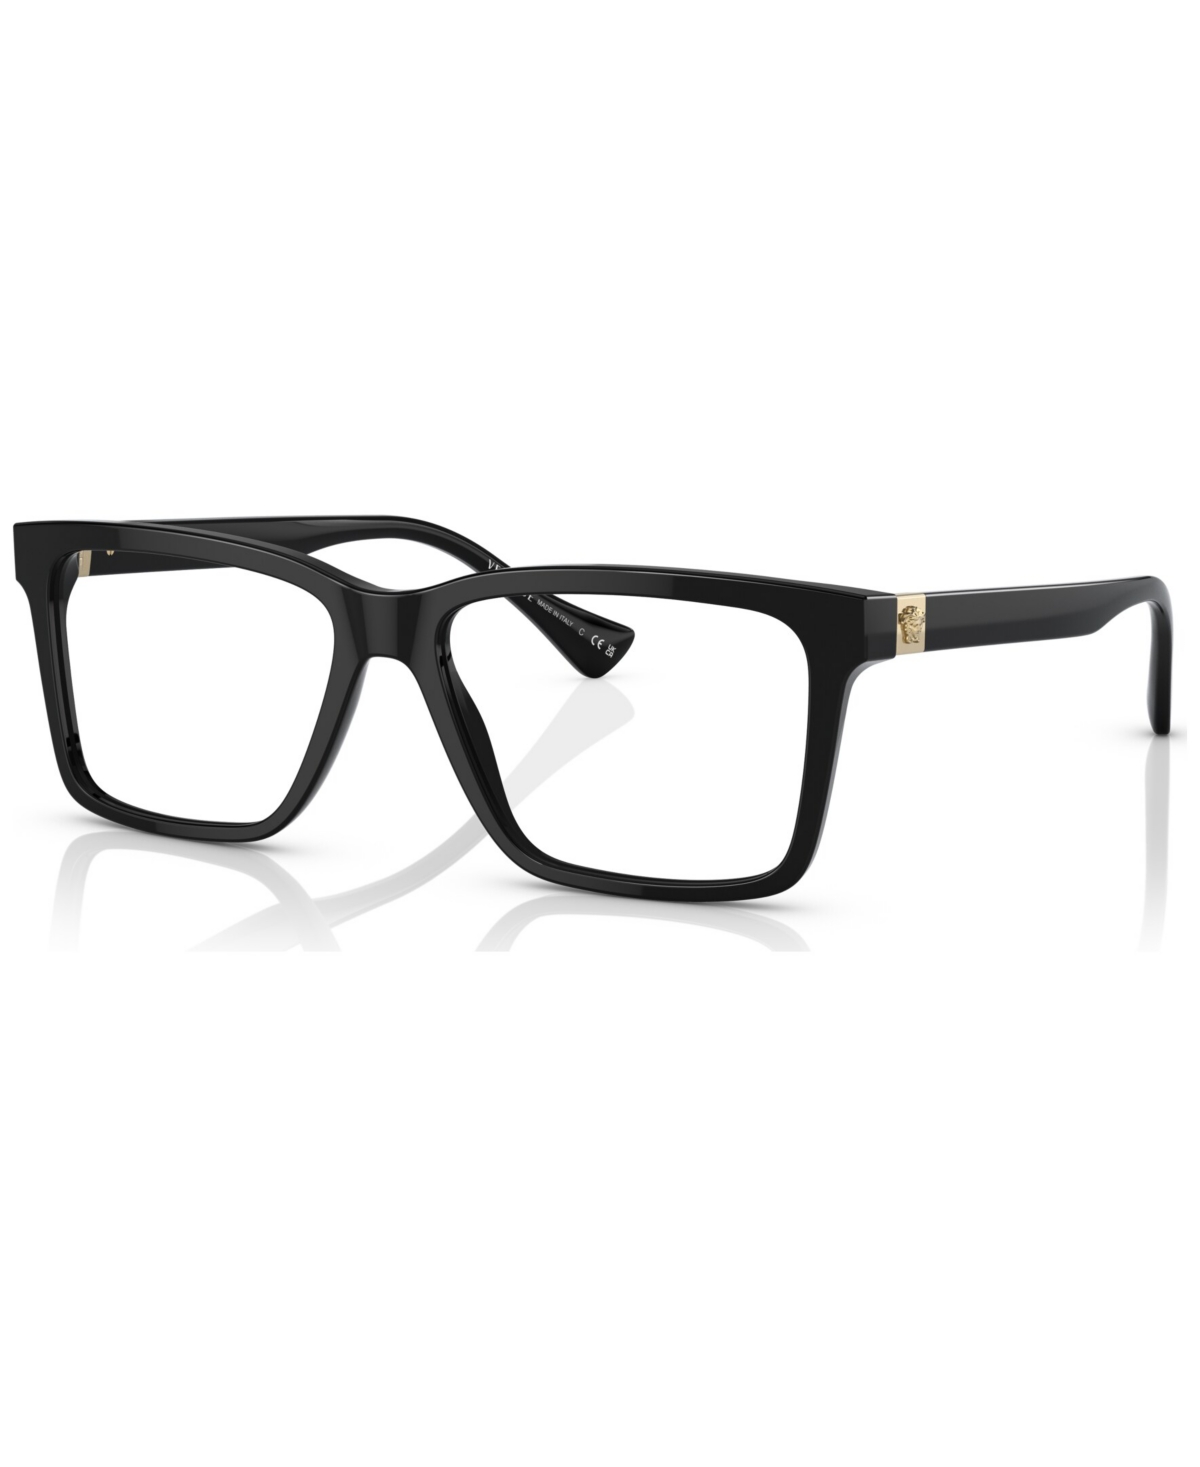 Men's Rectangle Eyeglasses, VE332856-o - Black